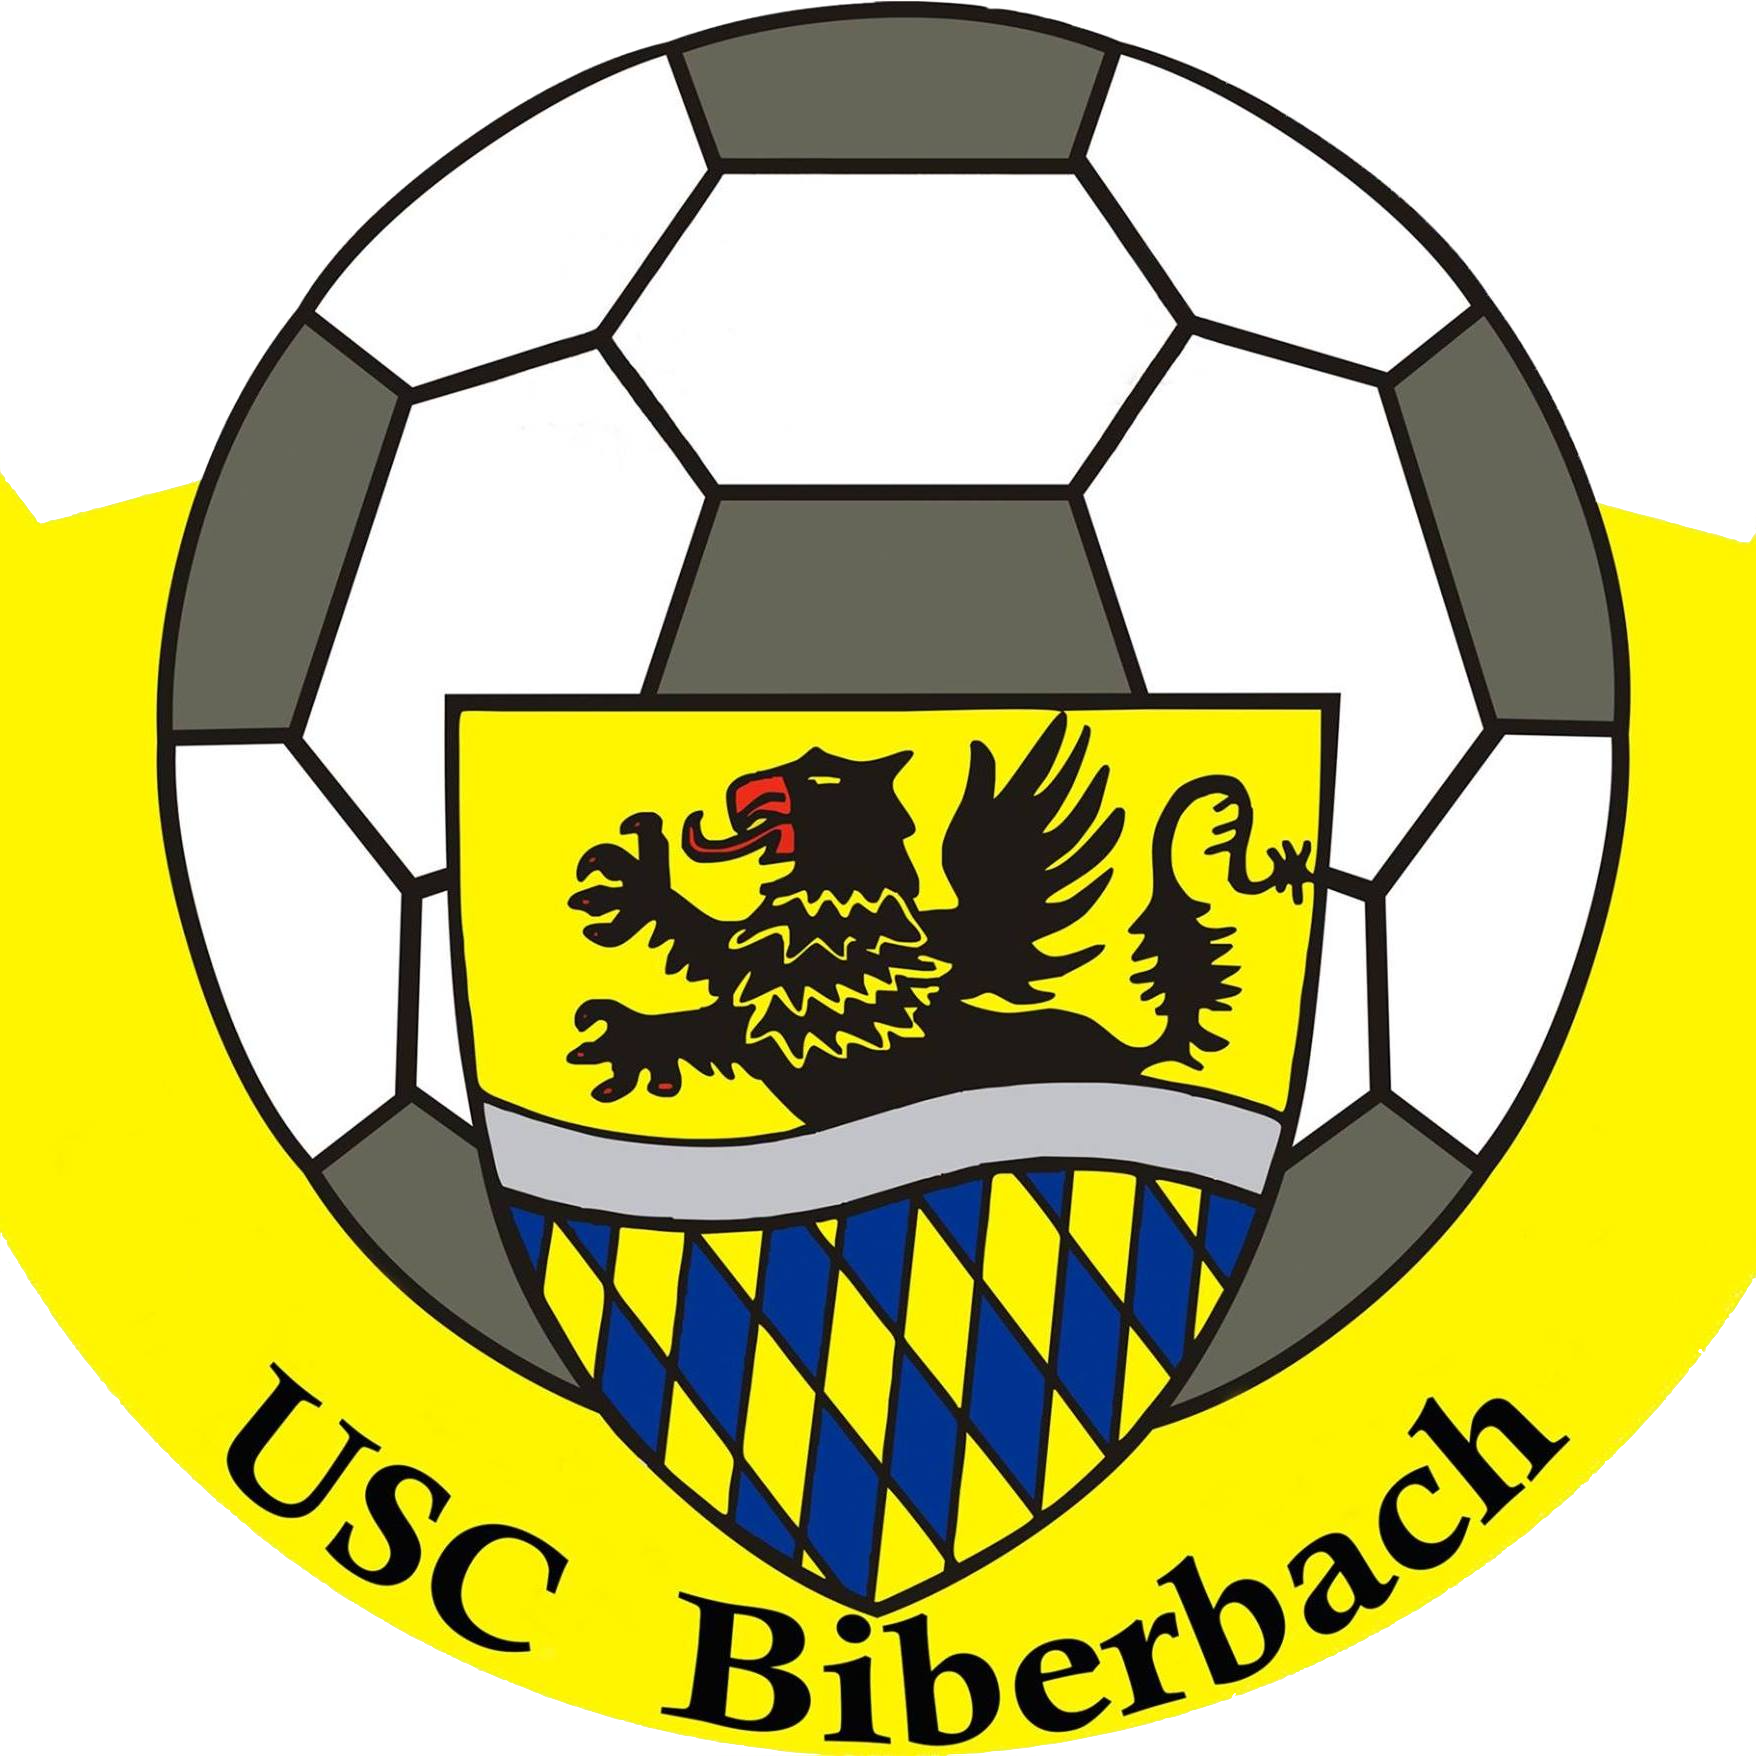 Wappen USC Biberbach diverse  129453